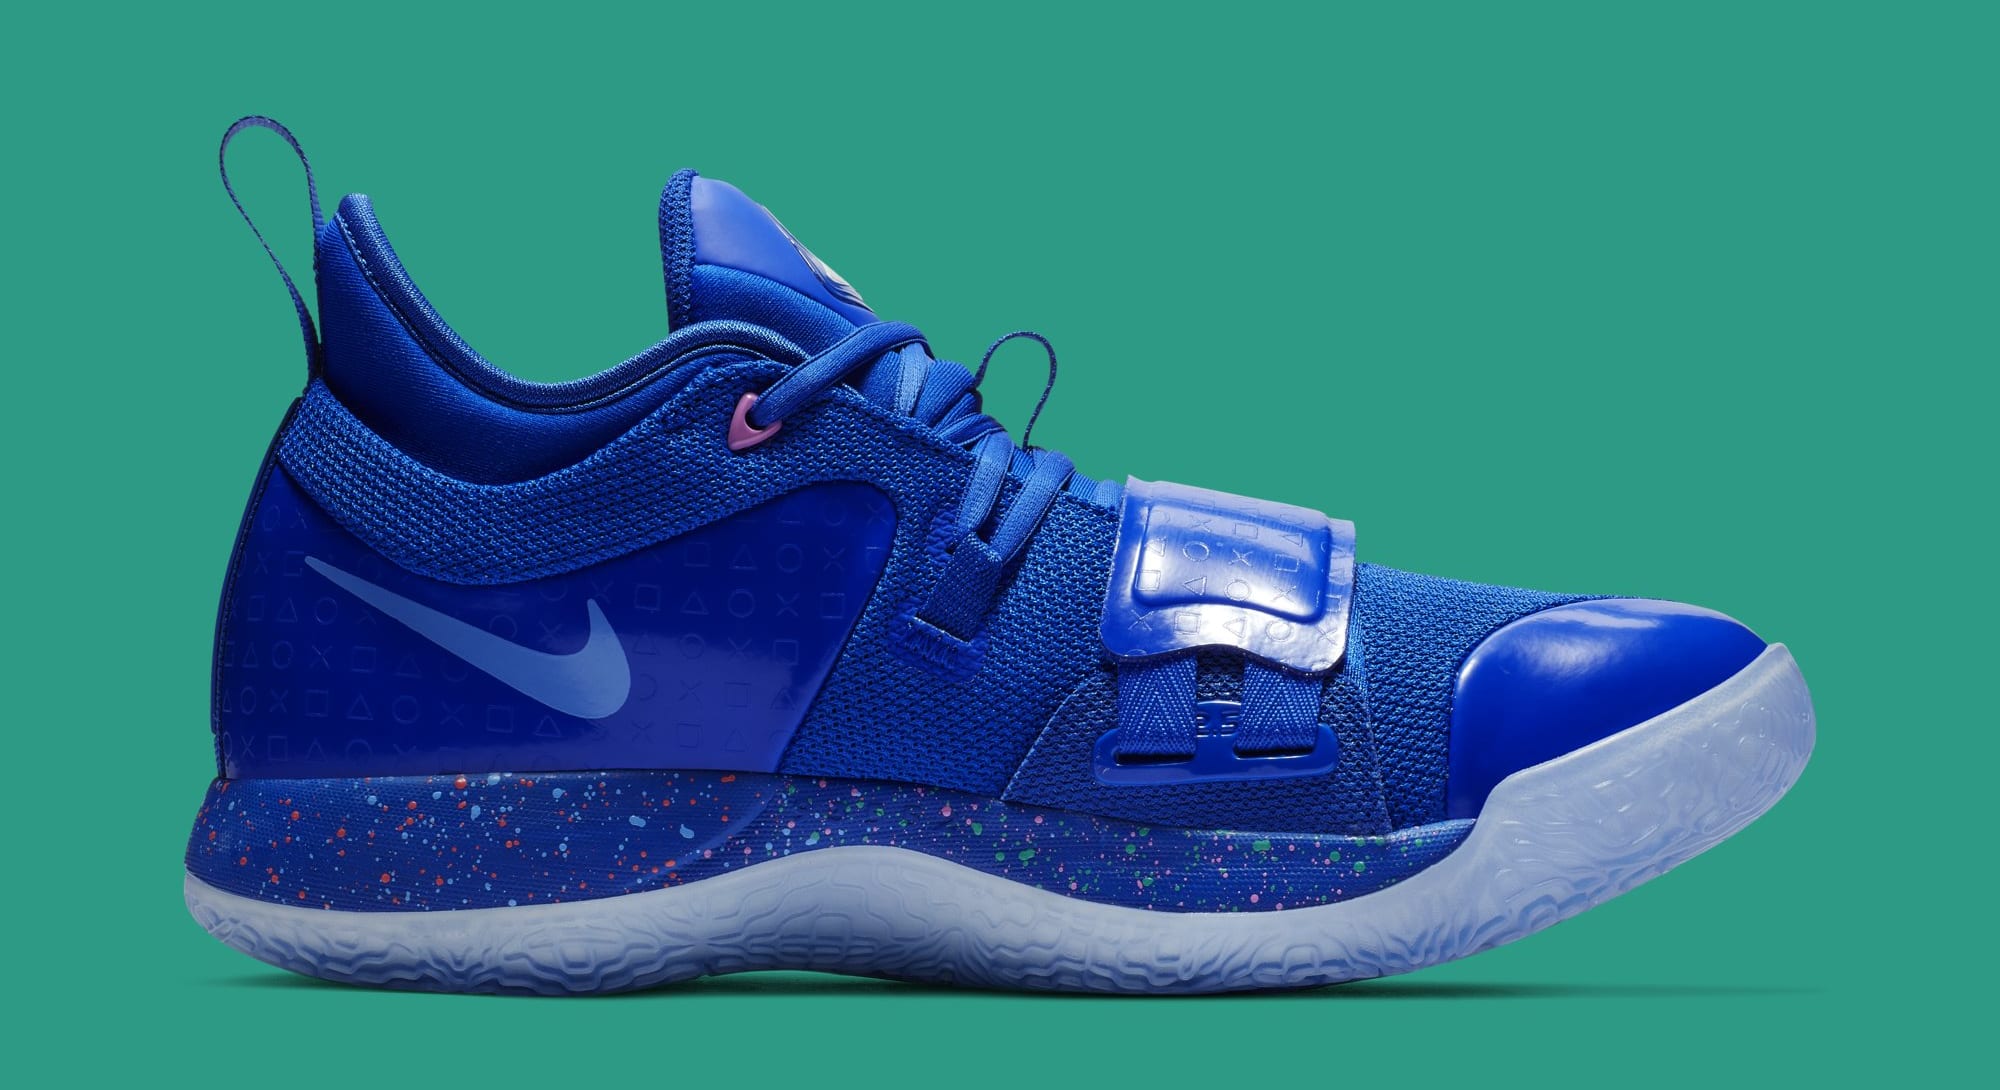 Paul George's 'Royal' Blue Nike PG 2.5 PlayStation Sneakers Arrive